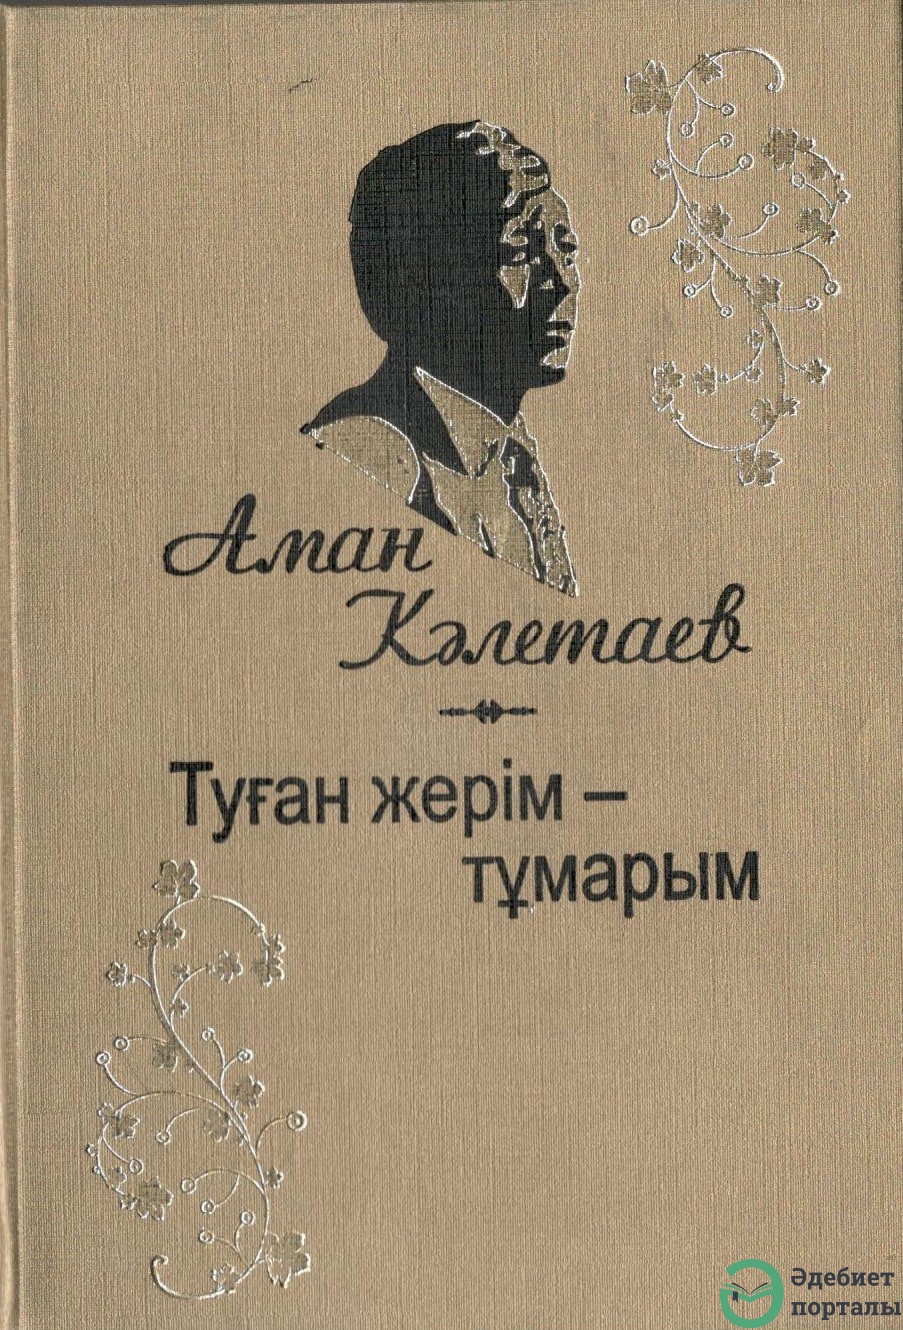 Аман Кәлетаев - adebiportal.kz